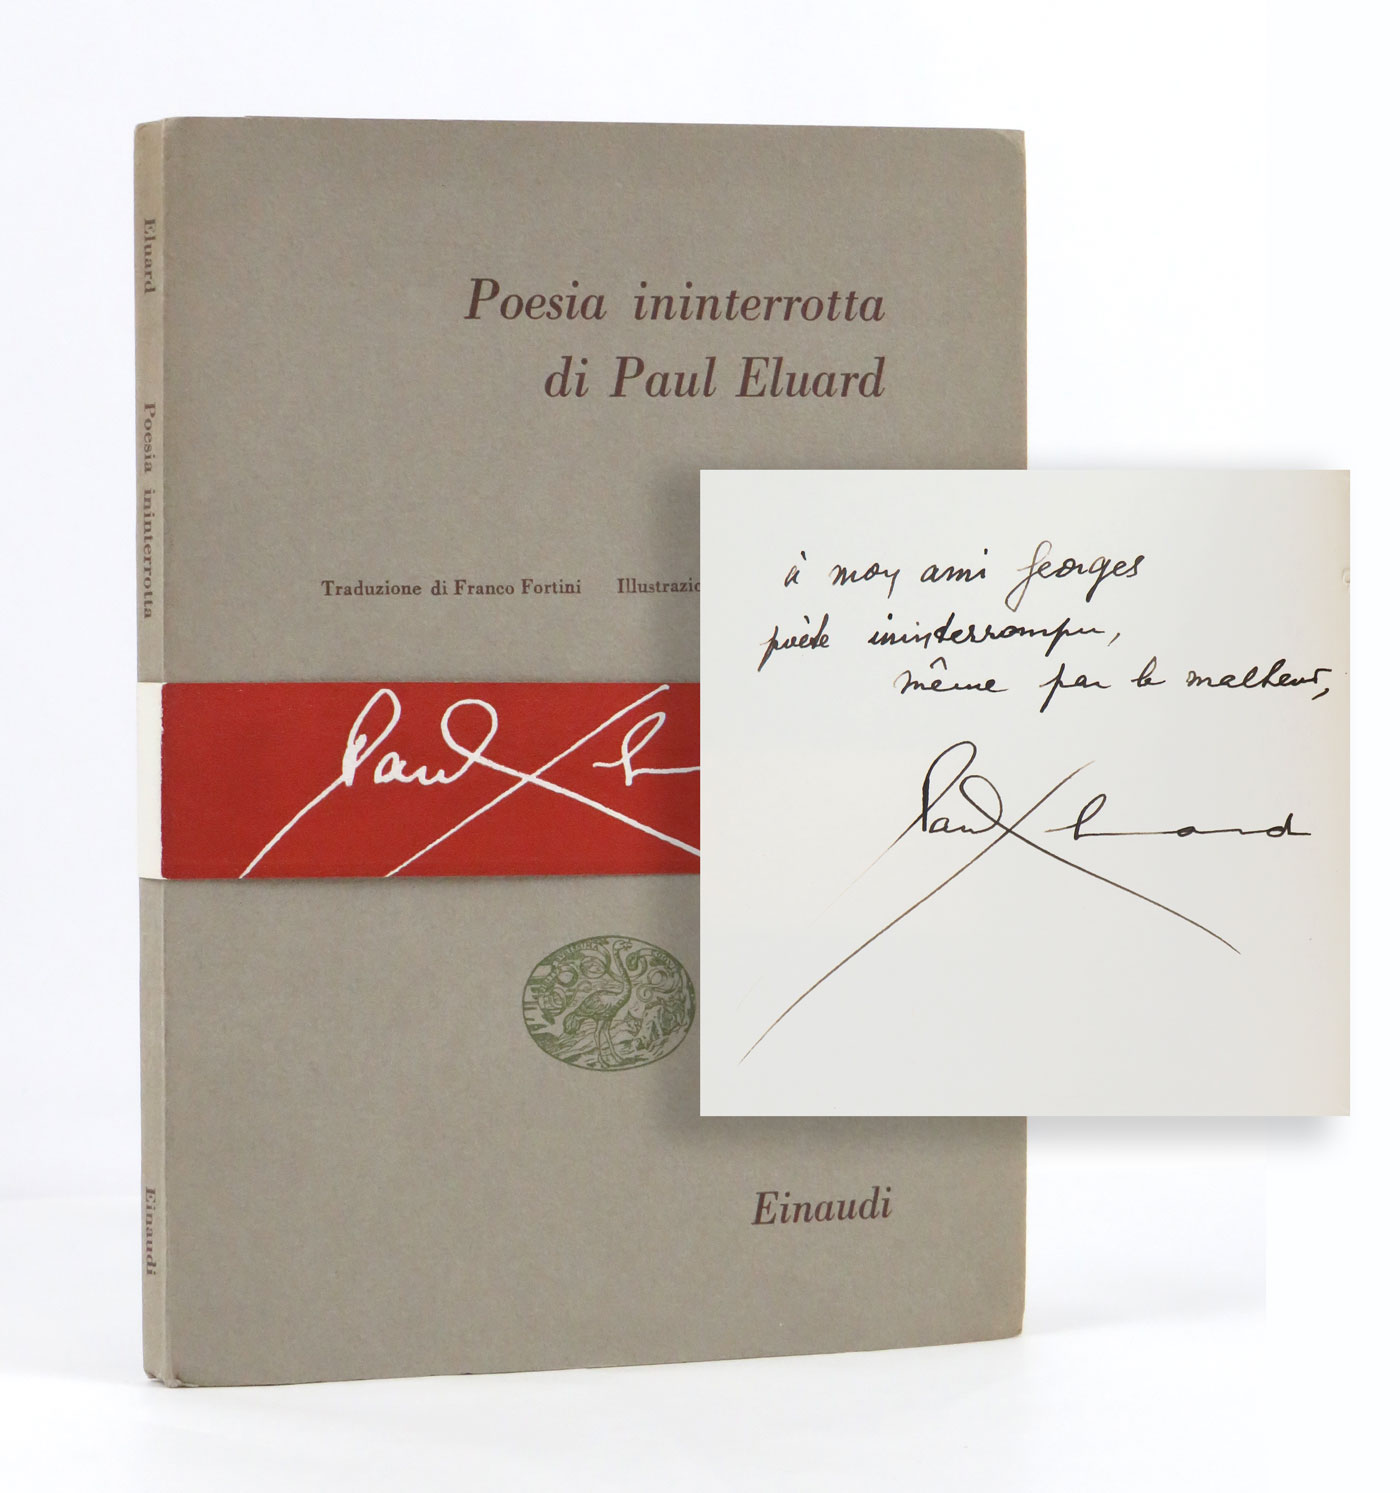 poesia ininterrotta [poèsie ininterrompue]. traduzione di franco fortini. illustrazioni di bruno cassinari